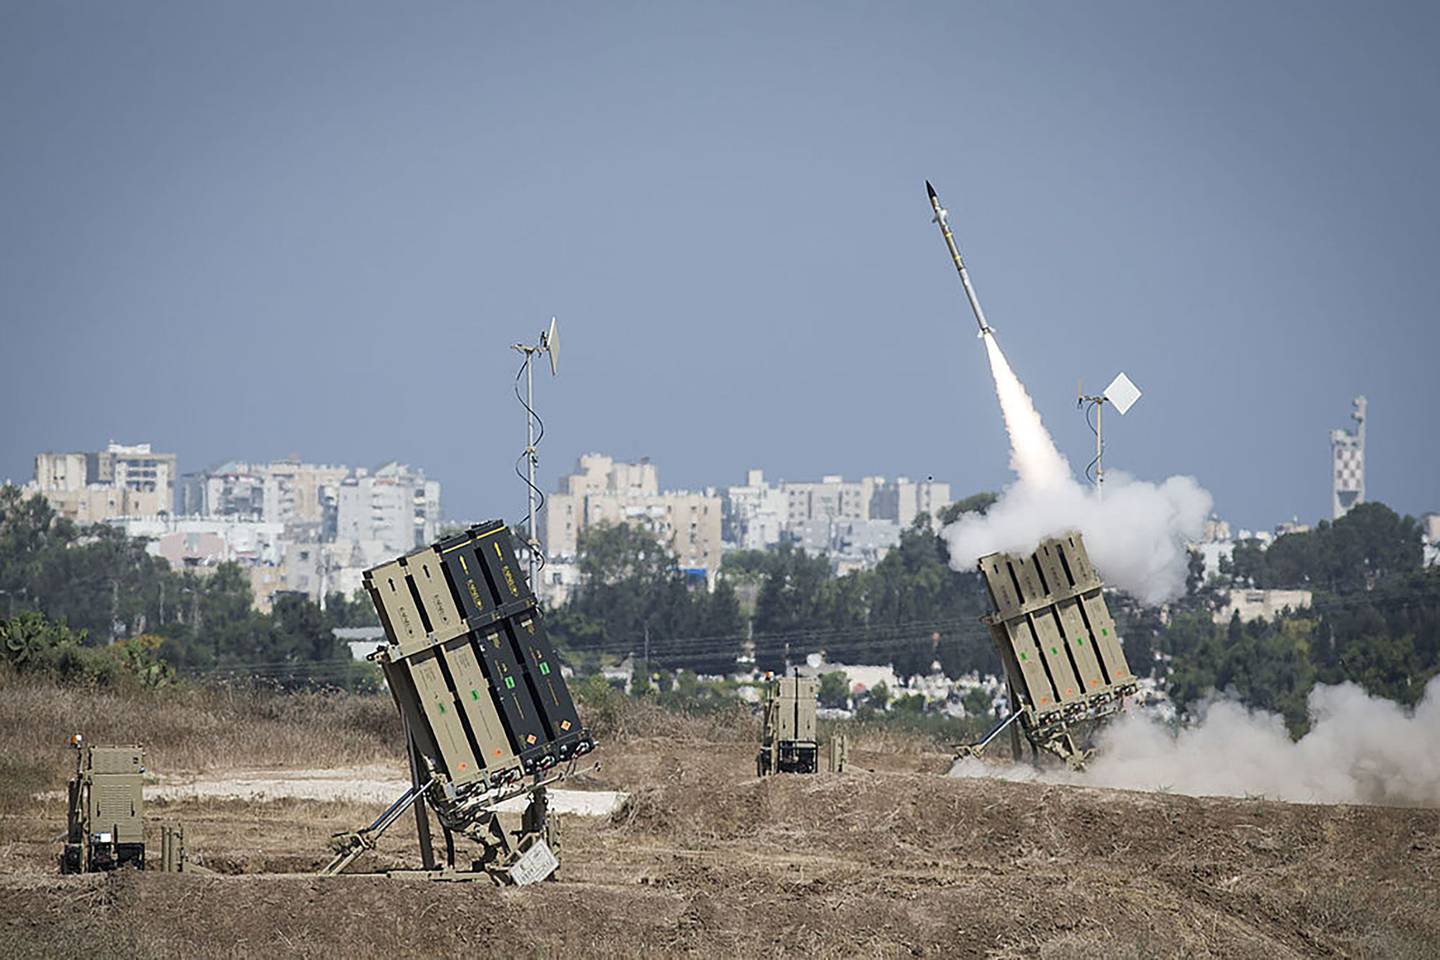 El sistema de defensa aérea Cúpula de Hierro dispara para interceptar un cohete sobre la ciudad de Ashdod el 8 de julio de 2014, en Ashdod, Israel. .